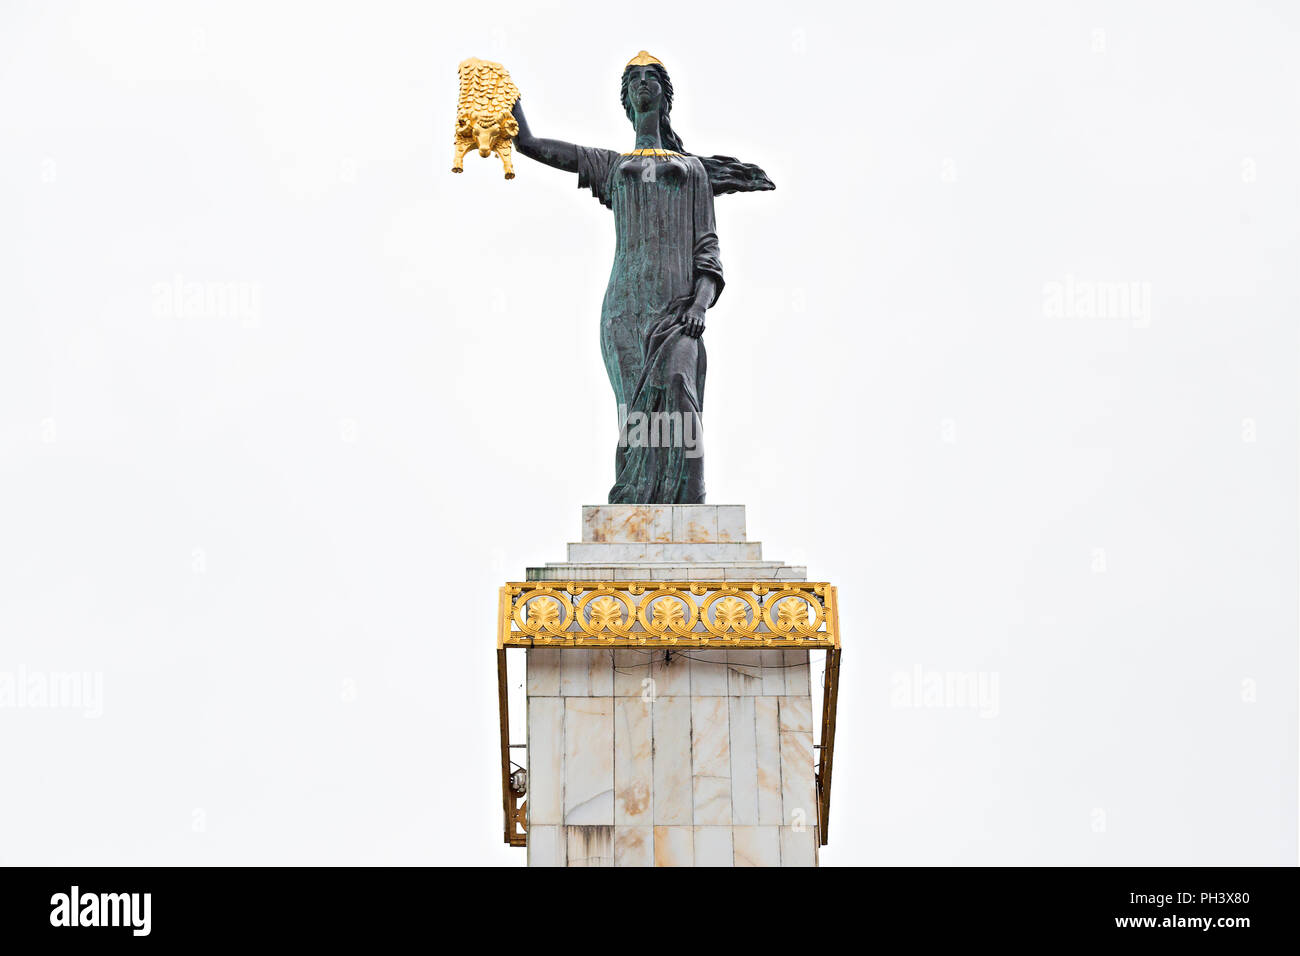 Statue de Medea sur la place de l'Europe représentant Medea, épouse de Jason dans la mythologie grecque, tenant le Golden Fleece, à Batumi, Géorgie Banque D'Images